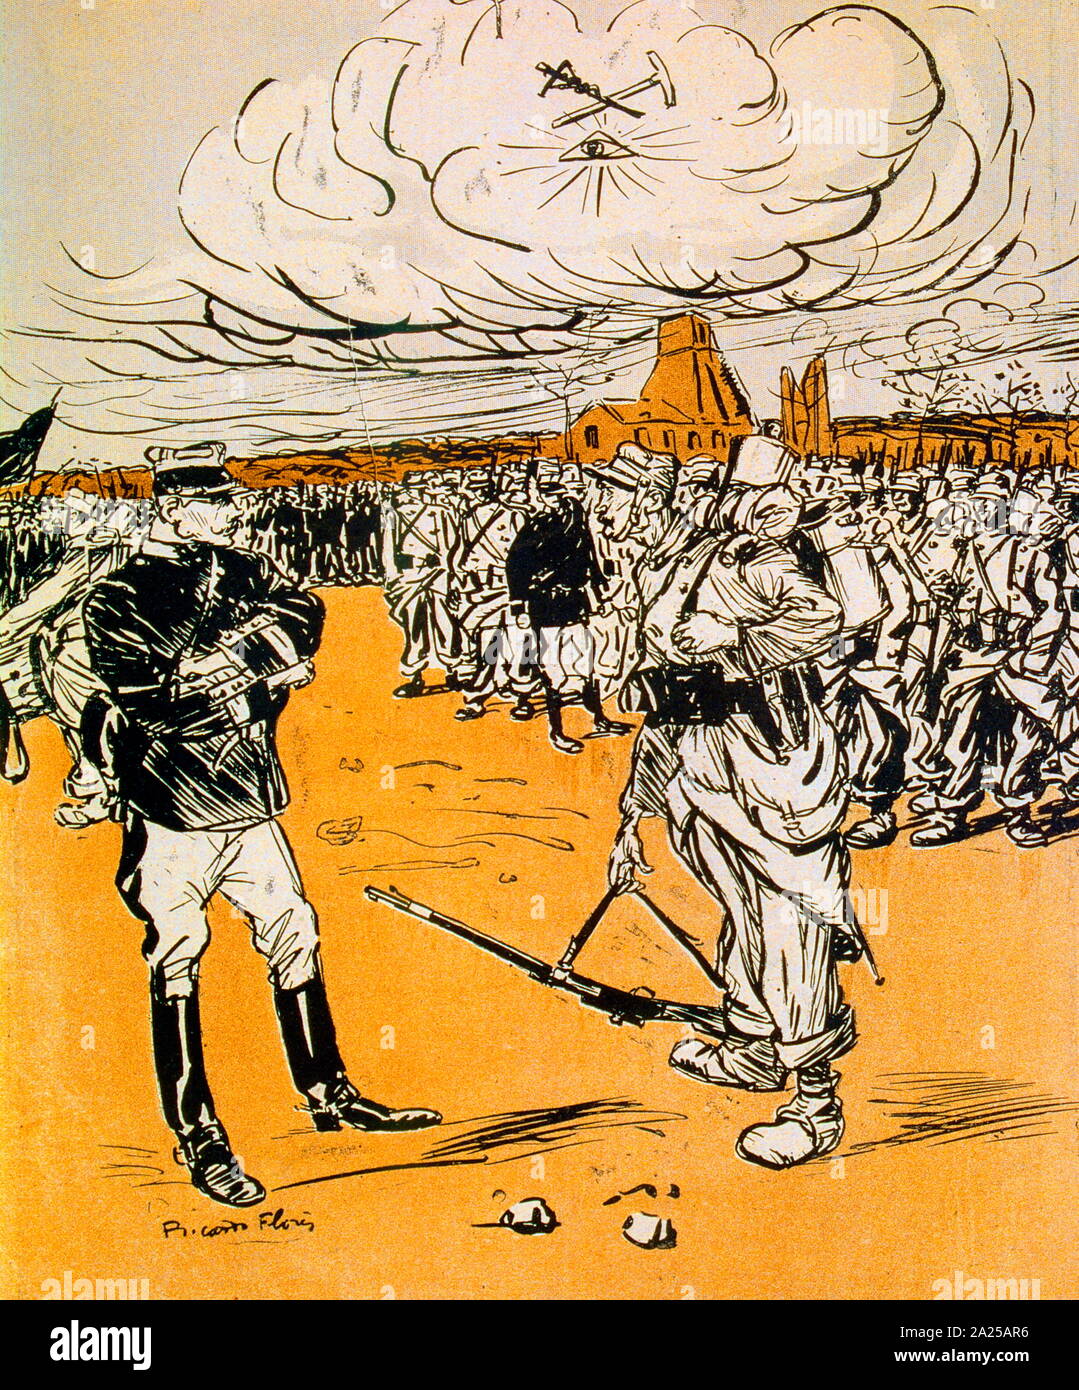 Caricature de Ricardo Florres, officier militaire français pieuse représentant d'être contesté par des soldats mutins indiscipliné Banque D'Images